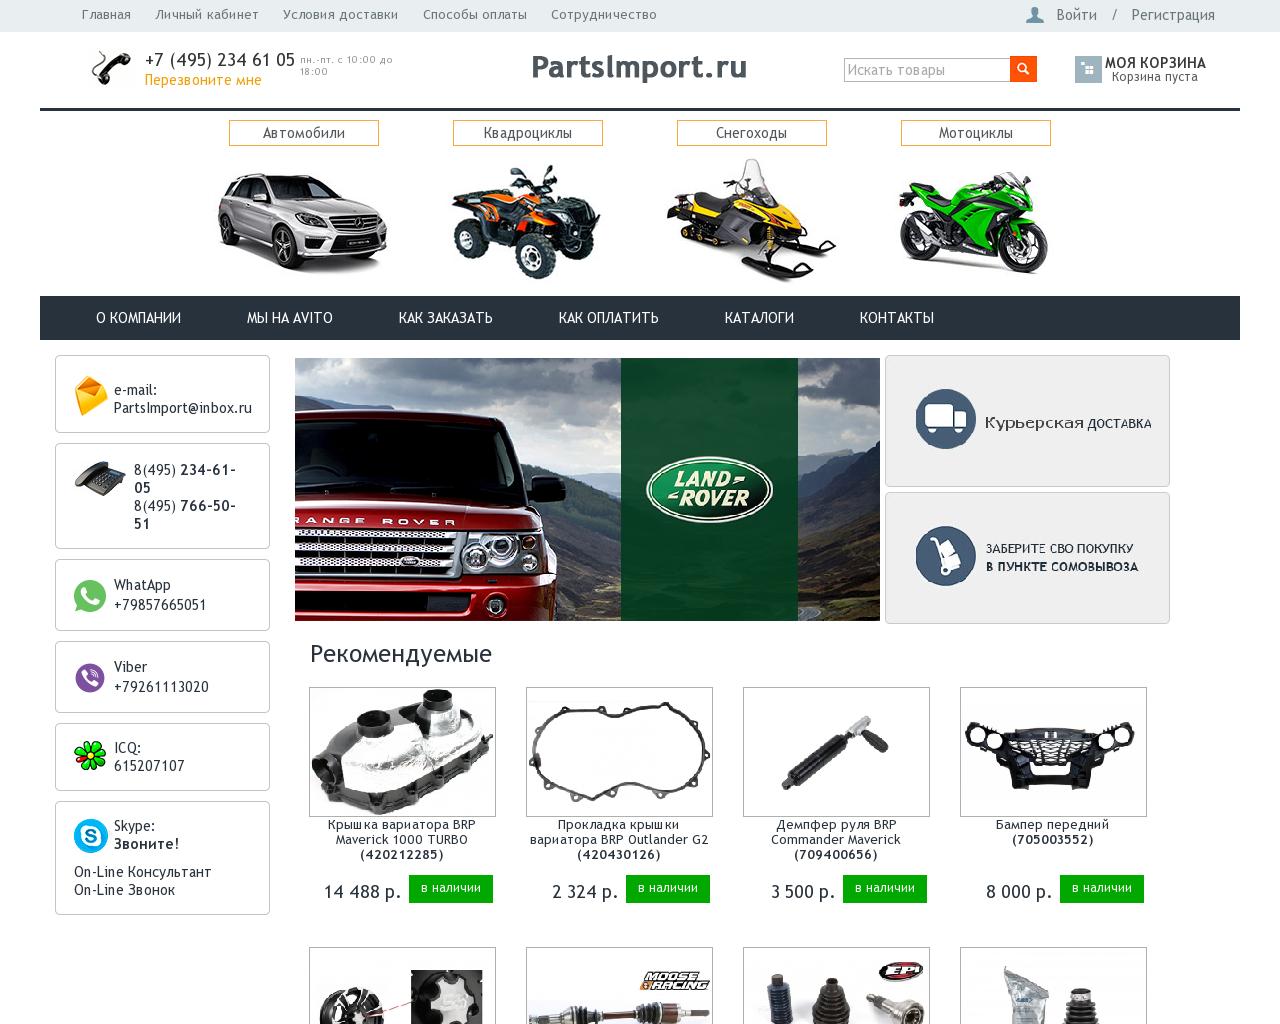 Изображение сайта partsimport.ru в разрешении 1280x1024